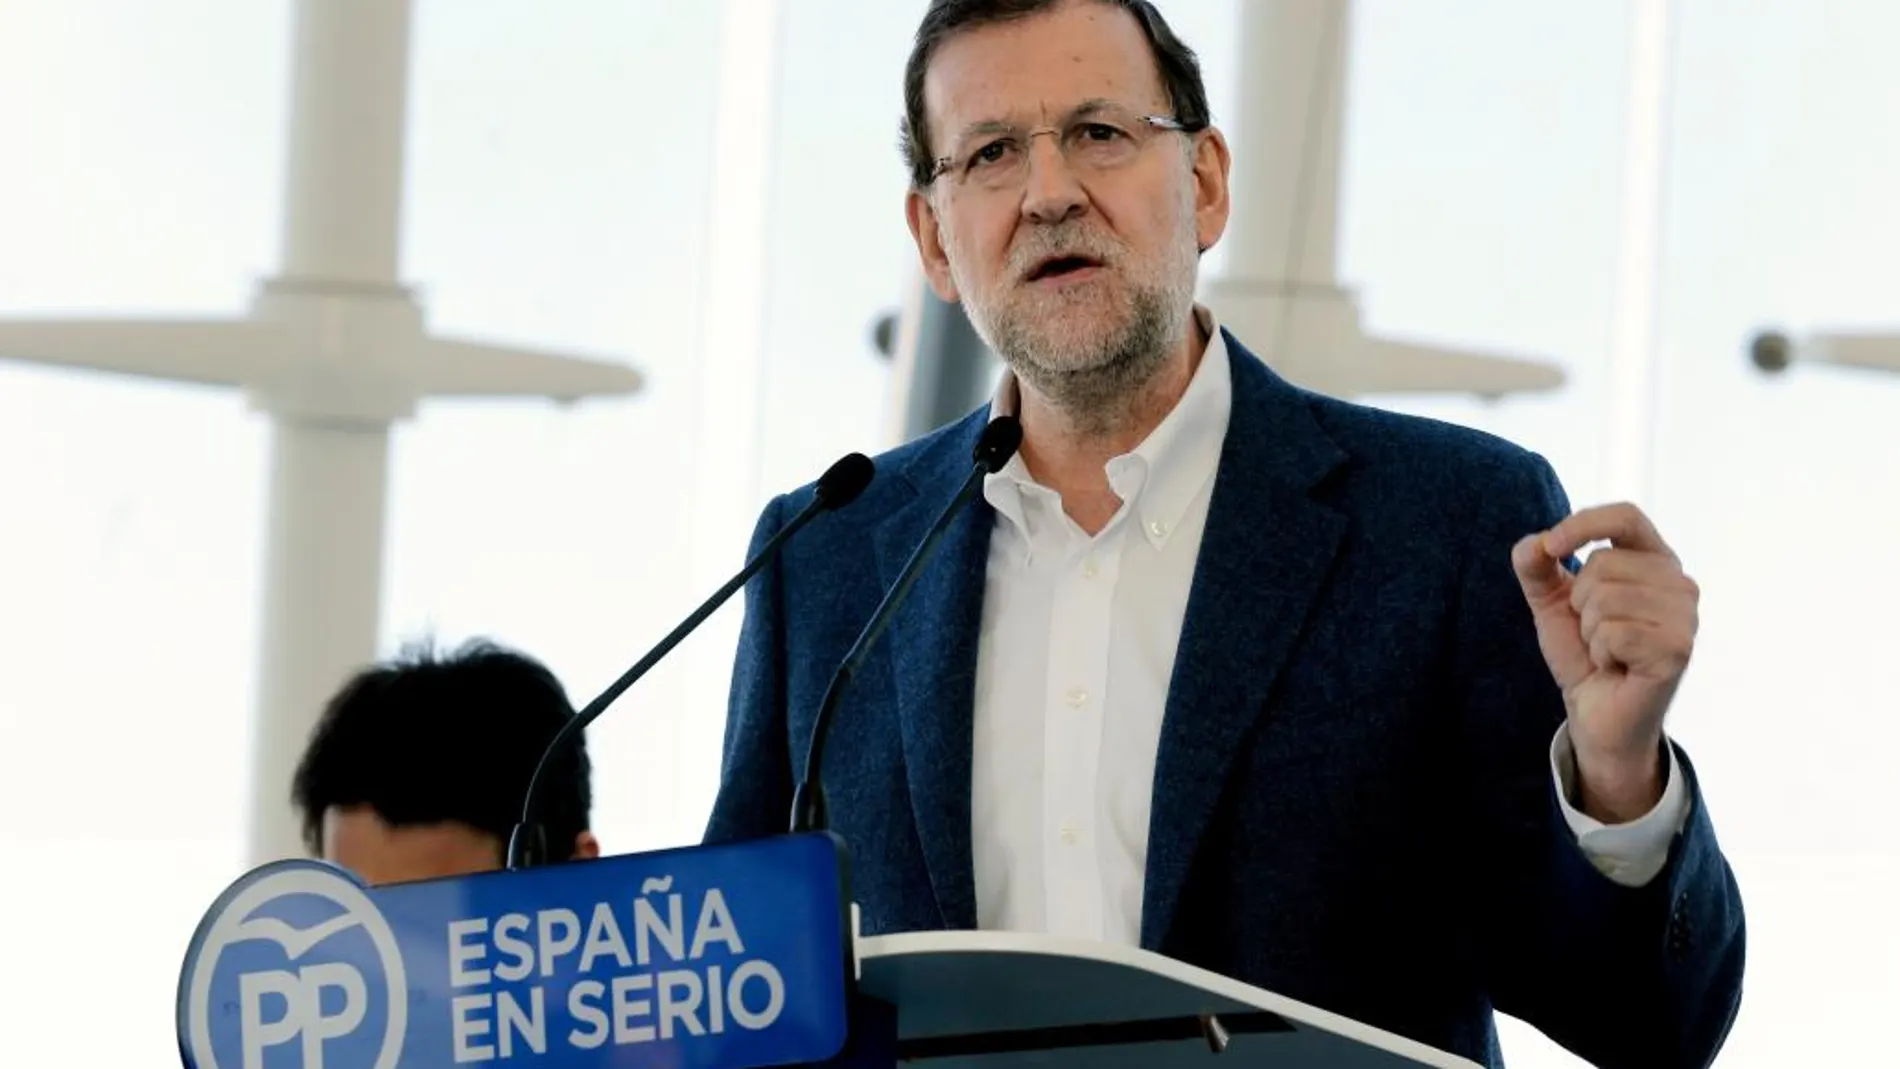 El presidente del Gobierno y del PP, Mariano Rajoy, durante el acto de presentación del programa electoral del PP para las elecciones del 20 de diciembre en Valencia.